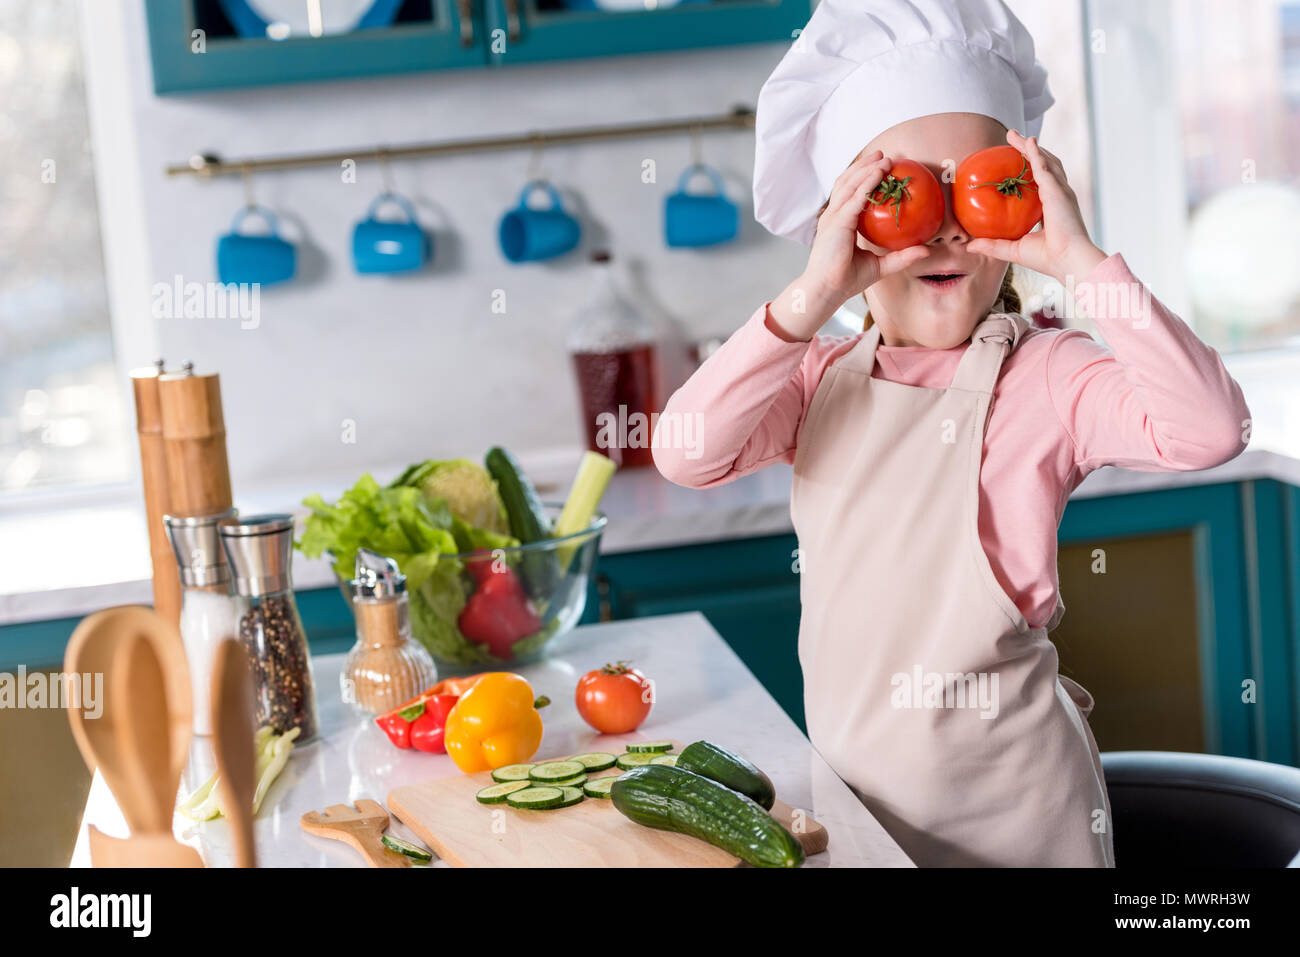 Niedliche Kind in Chef hat und Schürze holding Tomaten beim Kochen in der Küche Stockfoto